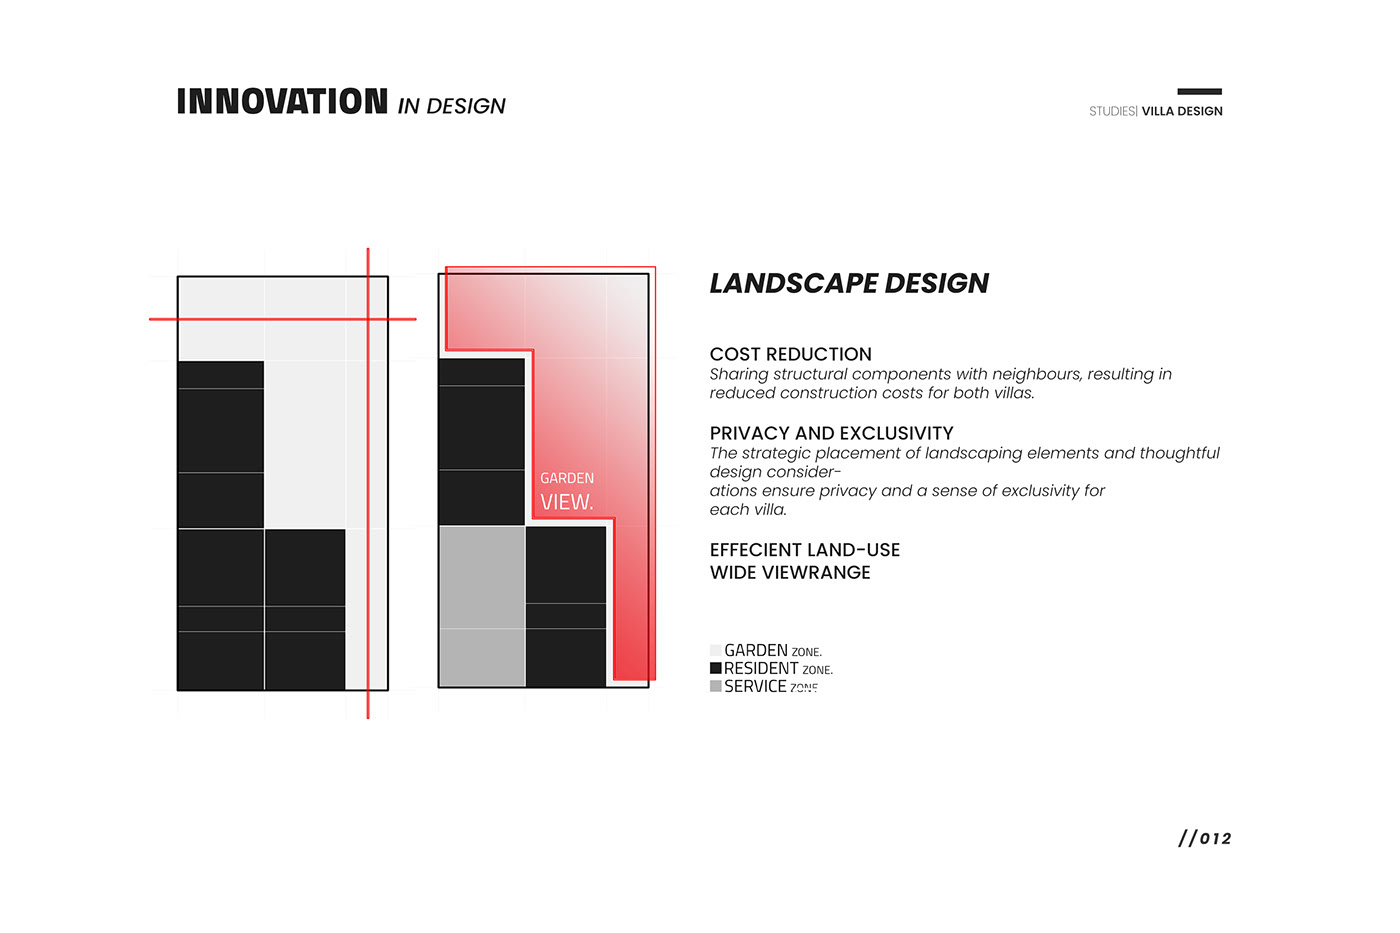 architecture design visualization villa plan exterior archviz cgartist CGI modern interior design 